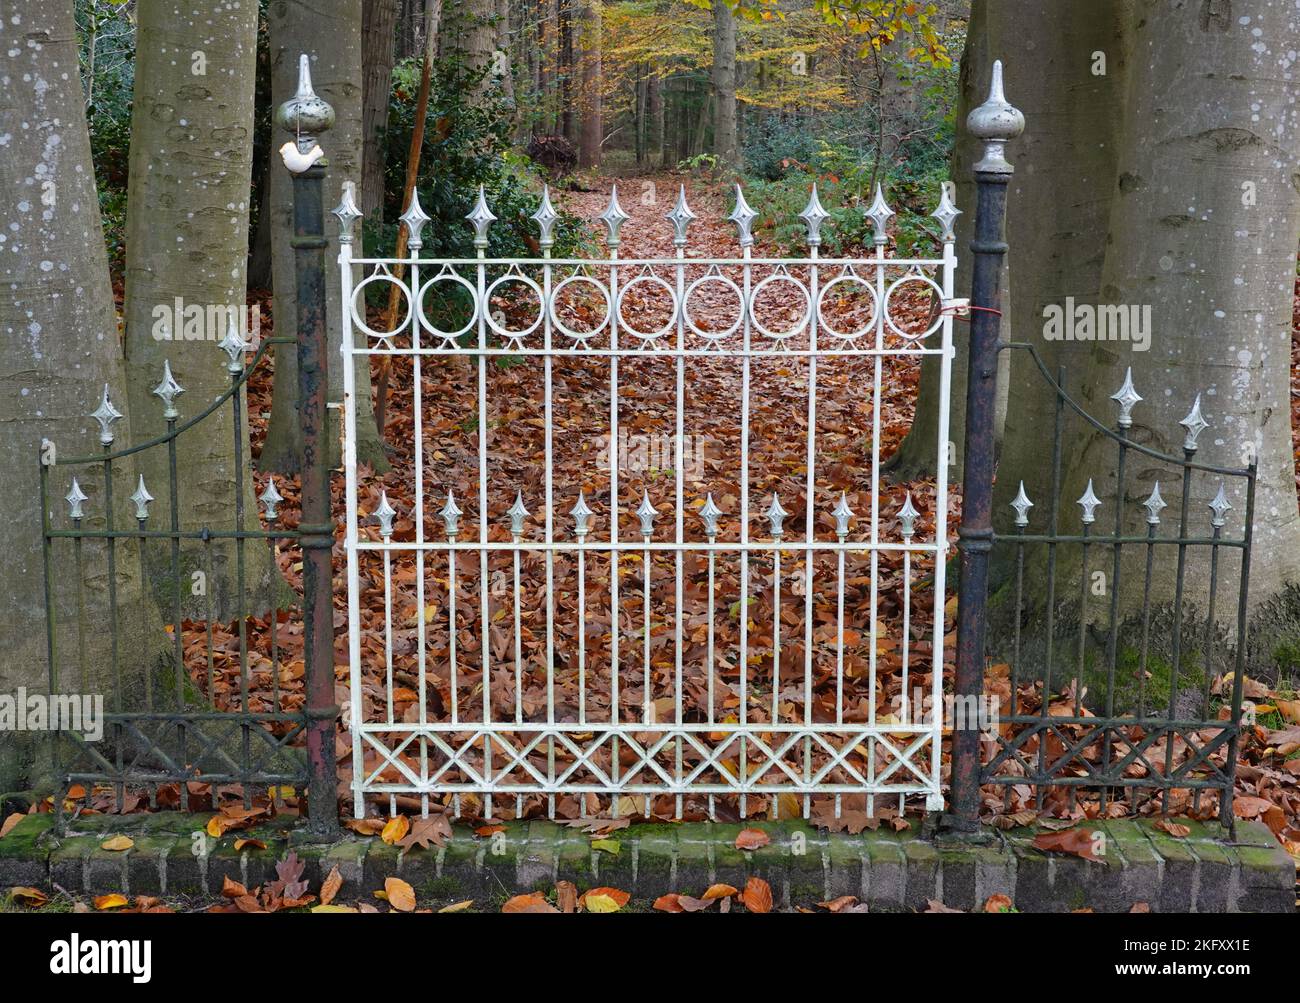 Cancello in ghisa splendidamente decorato che dà accesso ad un sentiero forestale in autunno Foto Stock